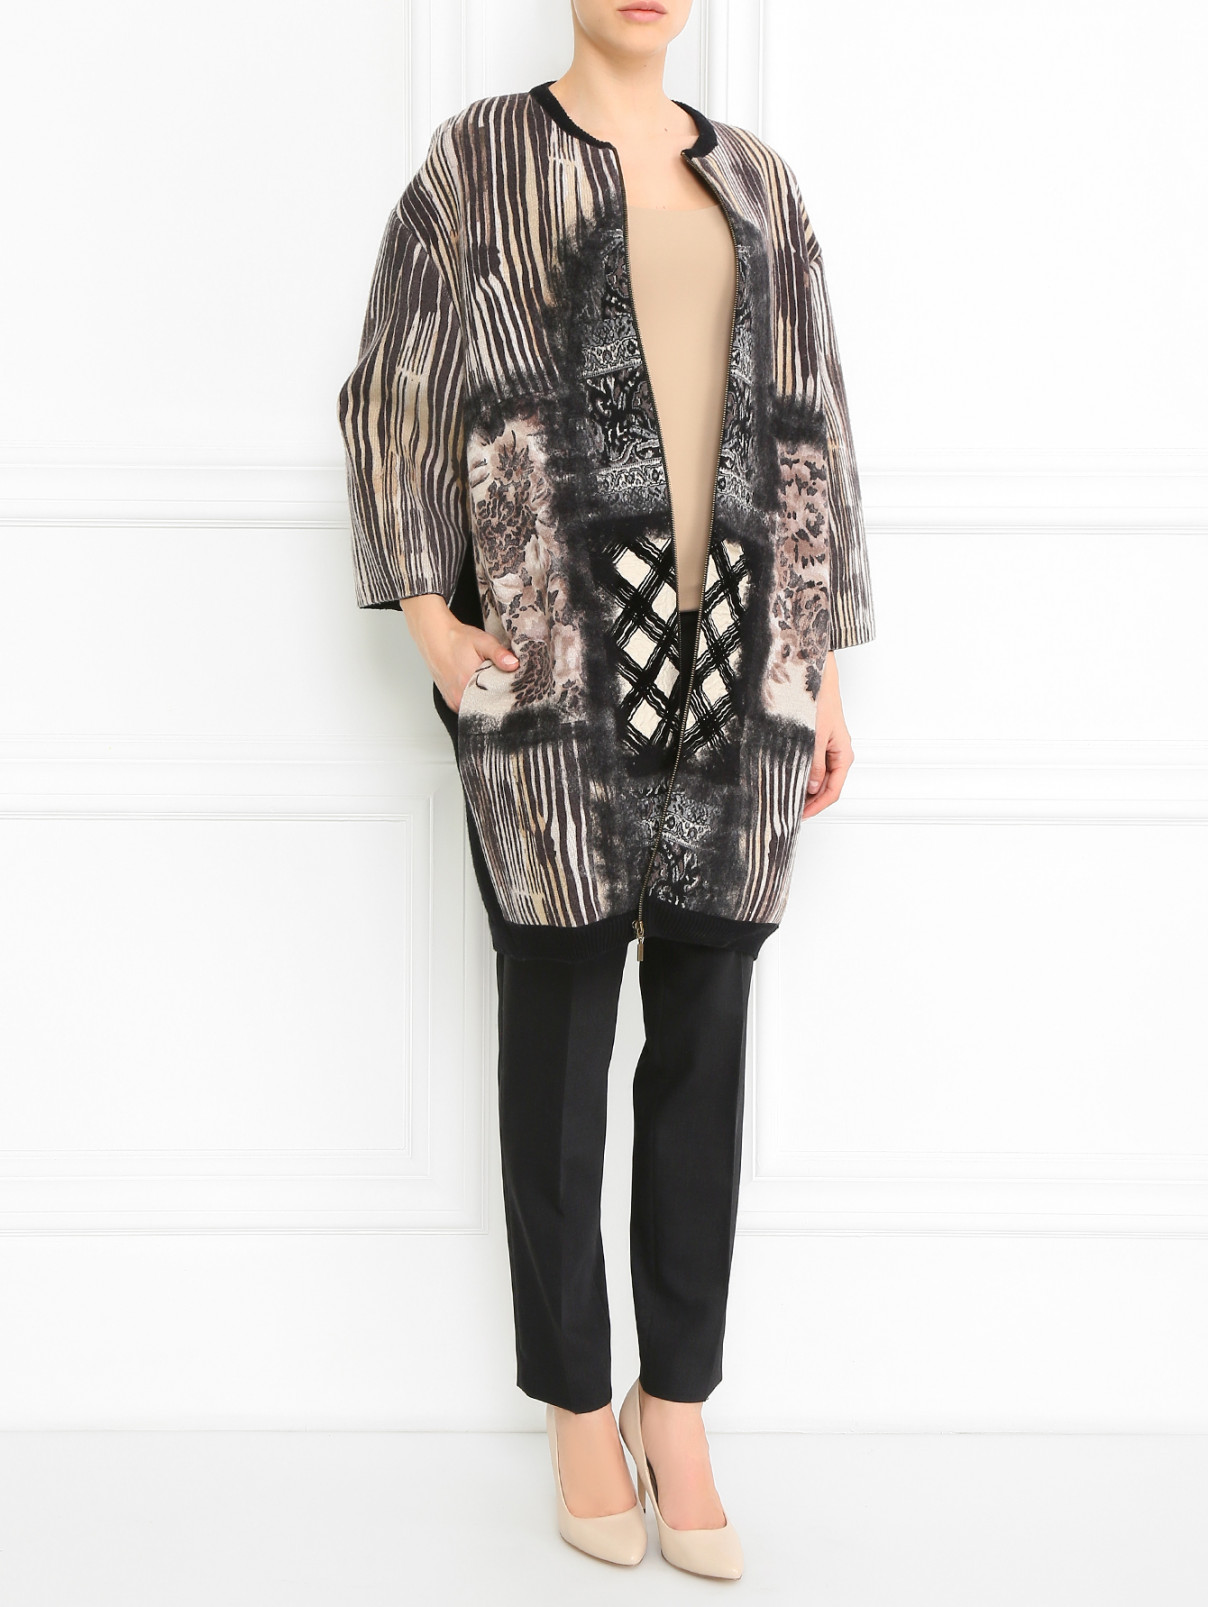 Пальто из  шерсти с контрастным  принтом Antonio Marras  –  Модель Общий вид  – Цвет:  Черный